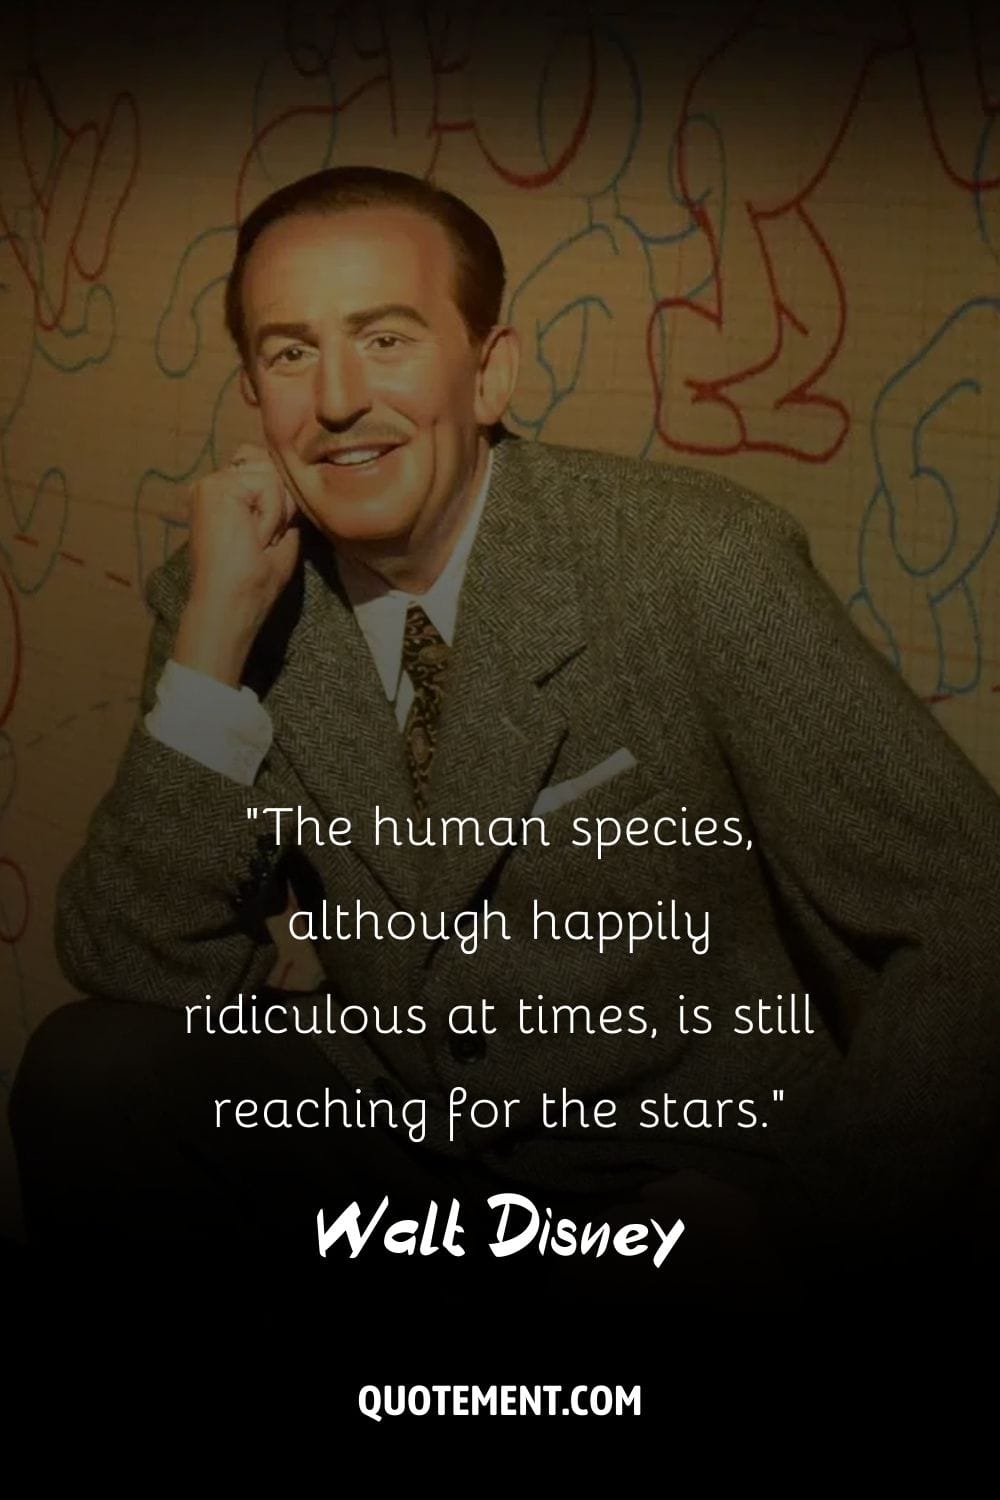 La sonrisa sana del legendario Walt Disney.